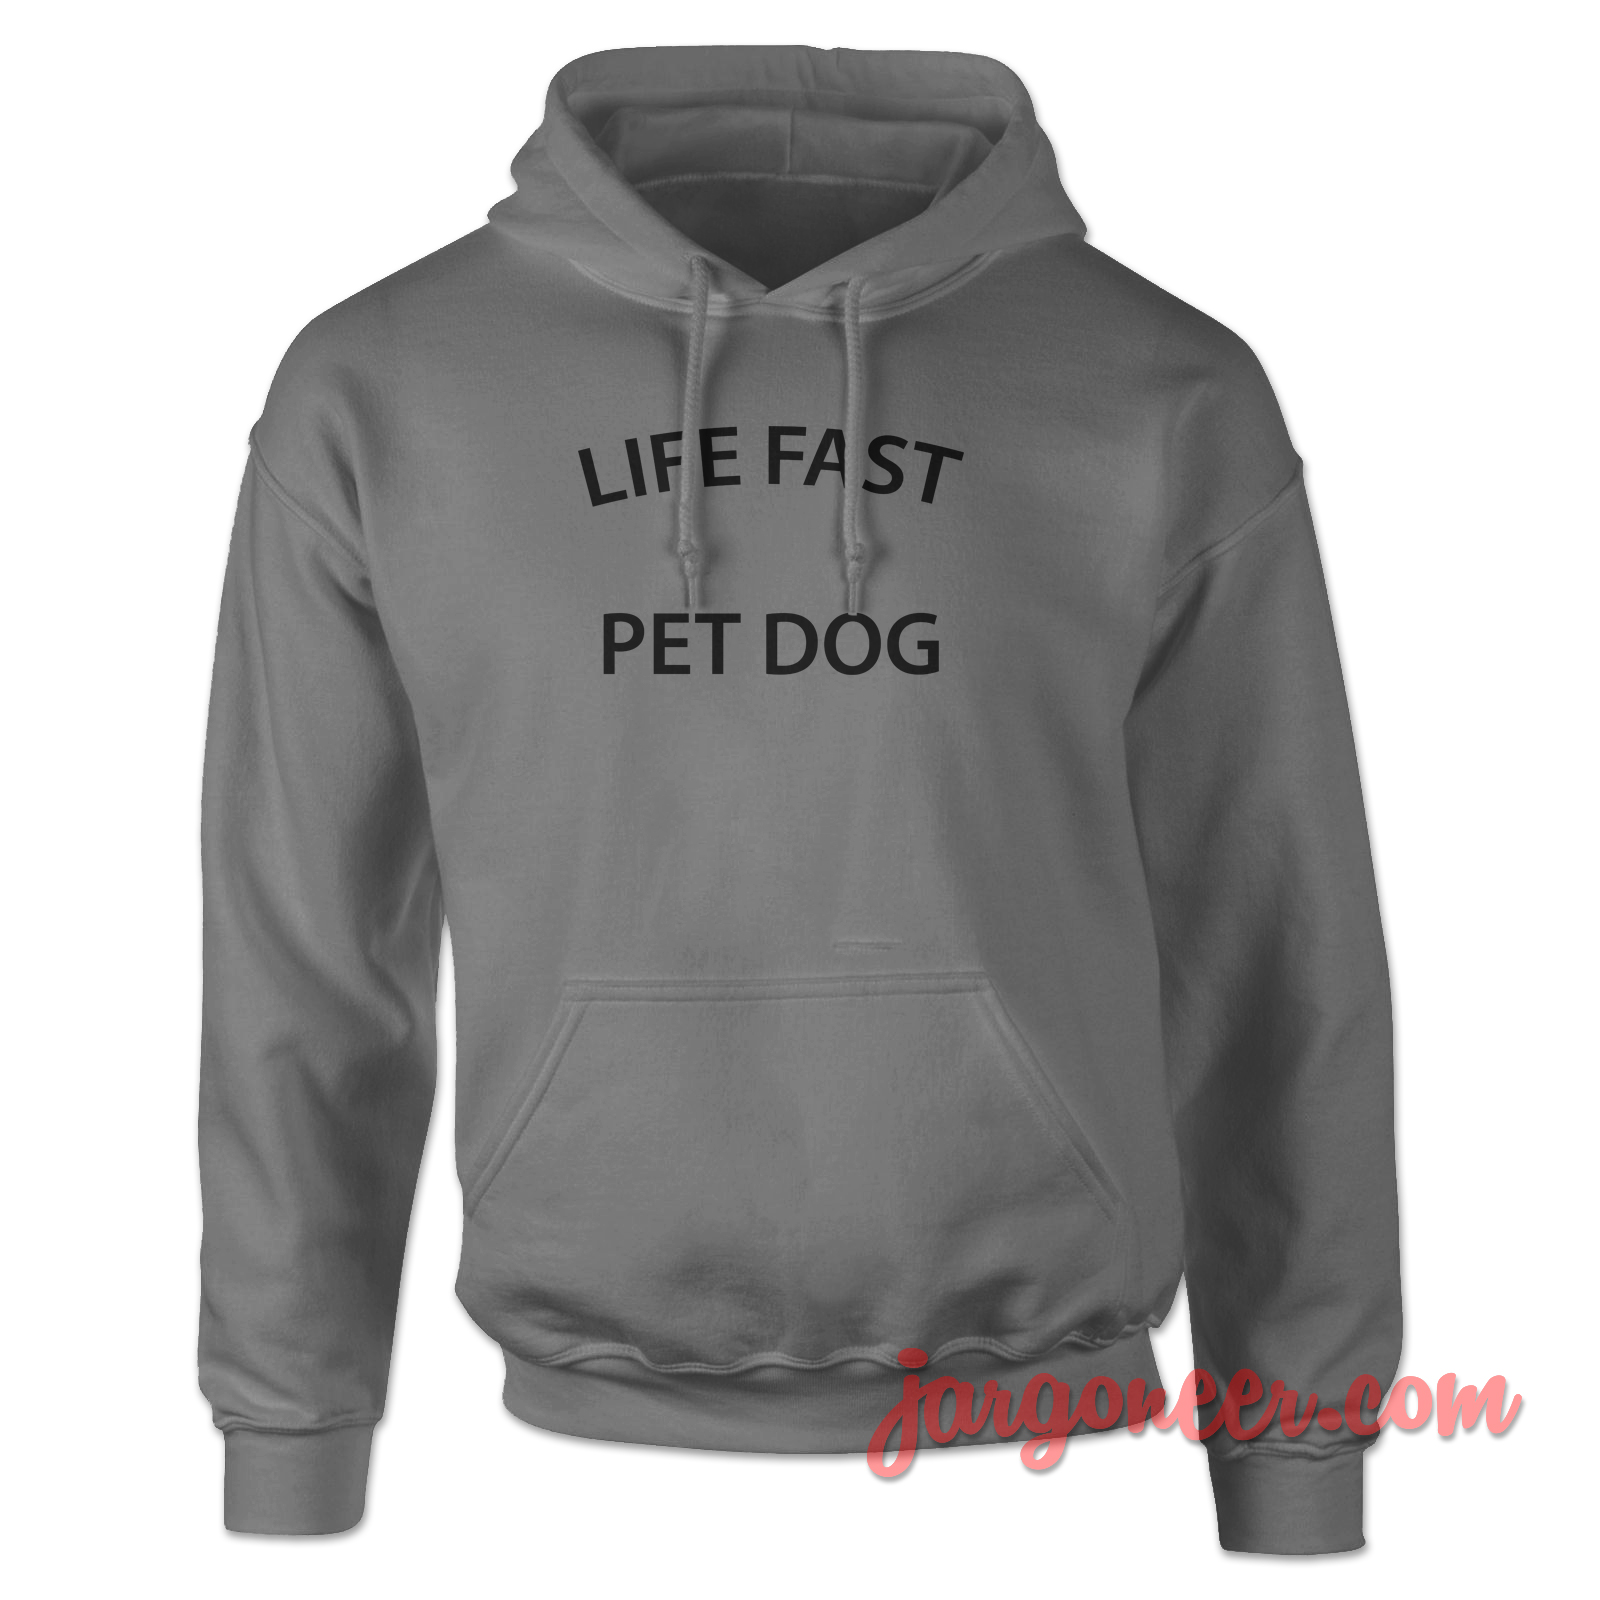 Life Fast Pet Dog 2 - Shop Unique Graphic Cool Shirt Designs